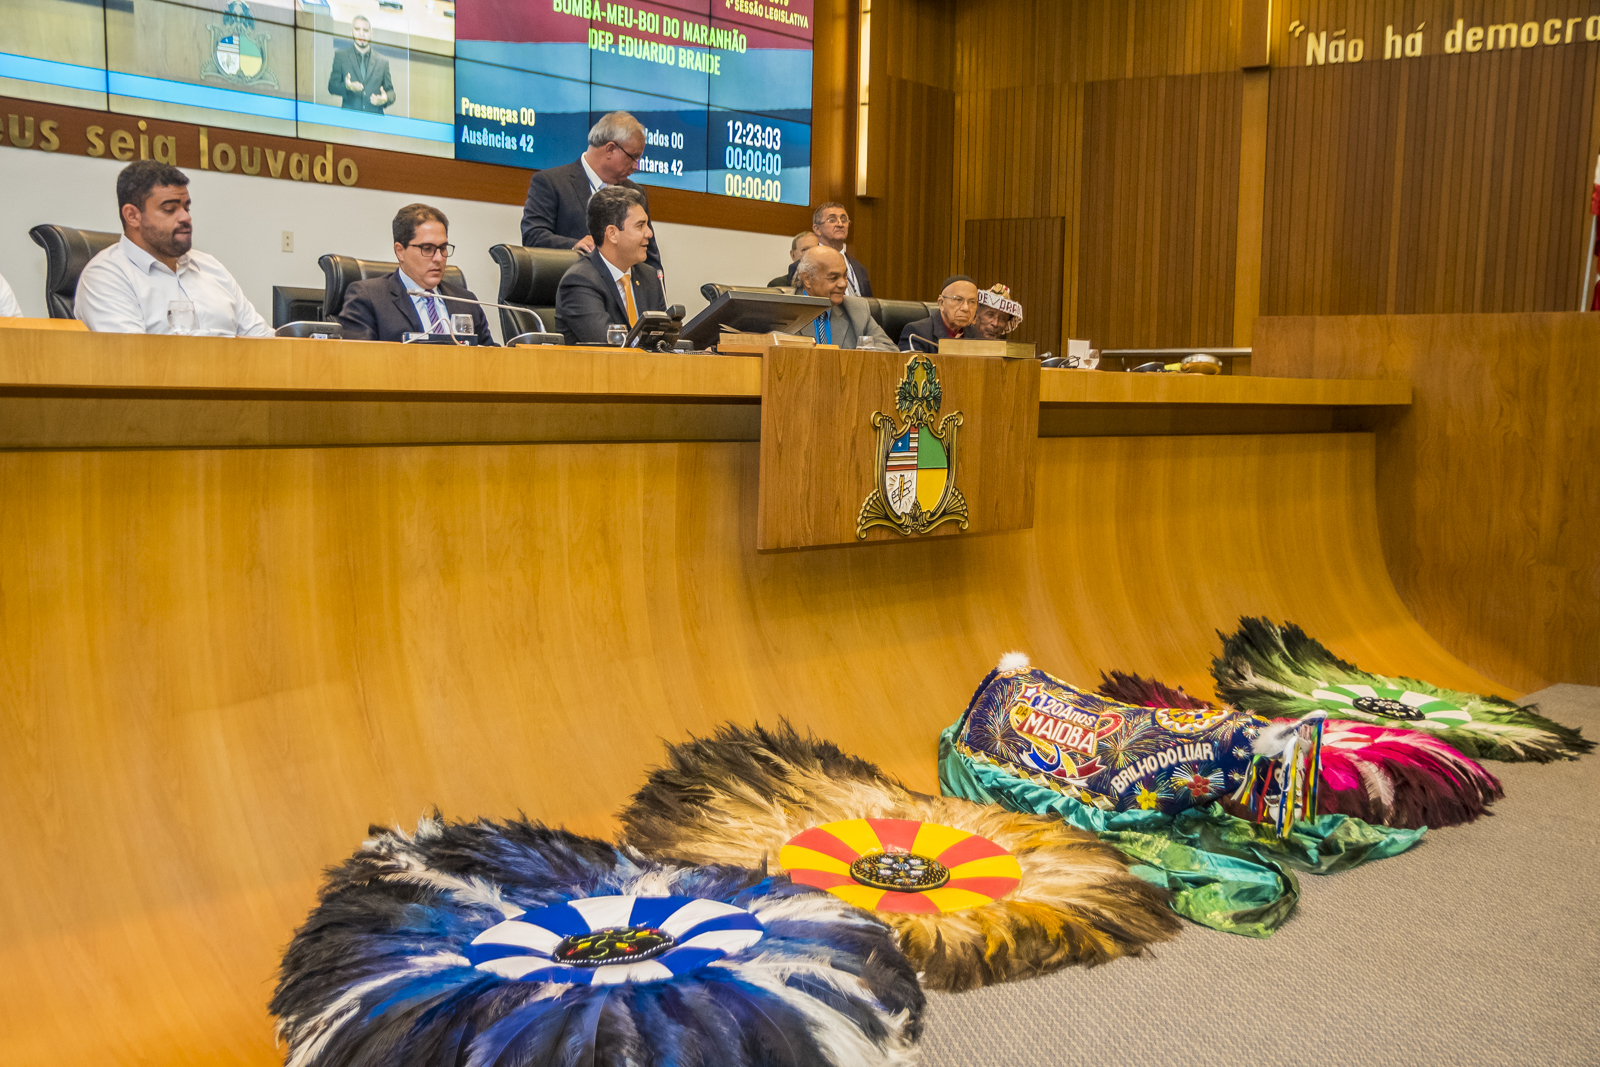 Assembleia realiza sessão solene em homenagem ao bumba meu boi do Maranhão